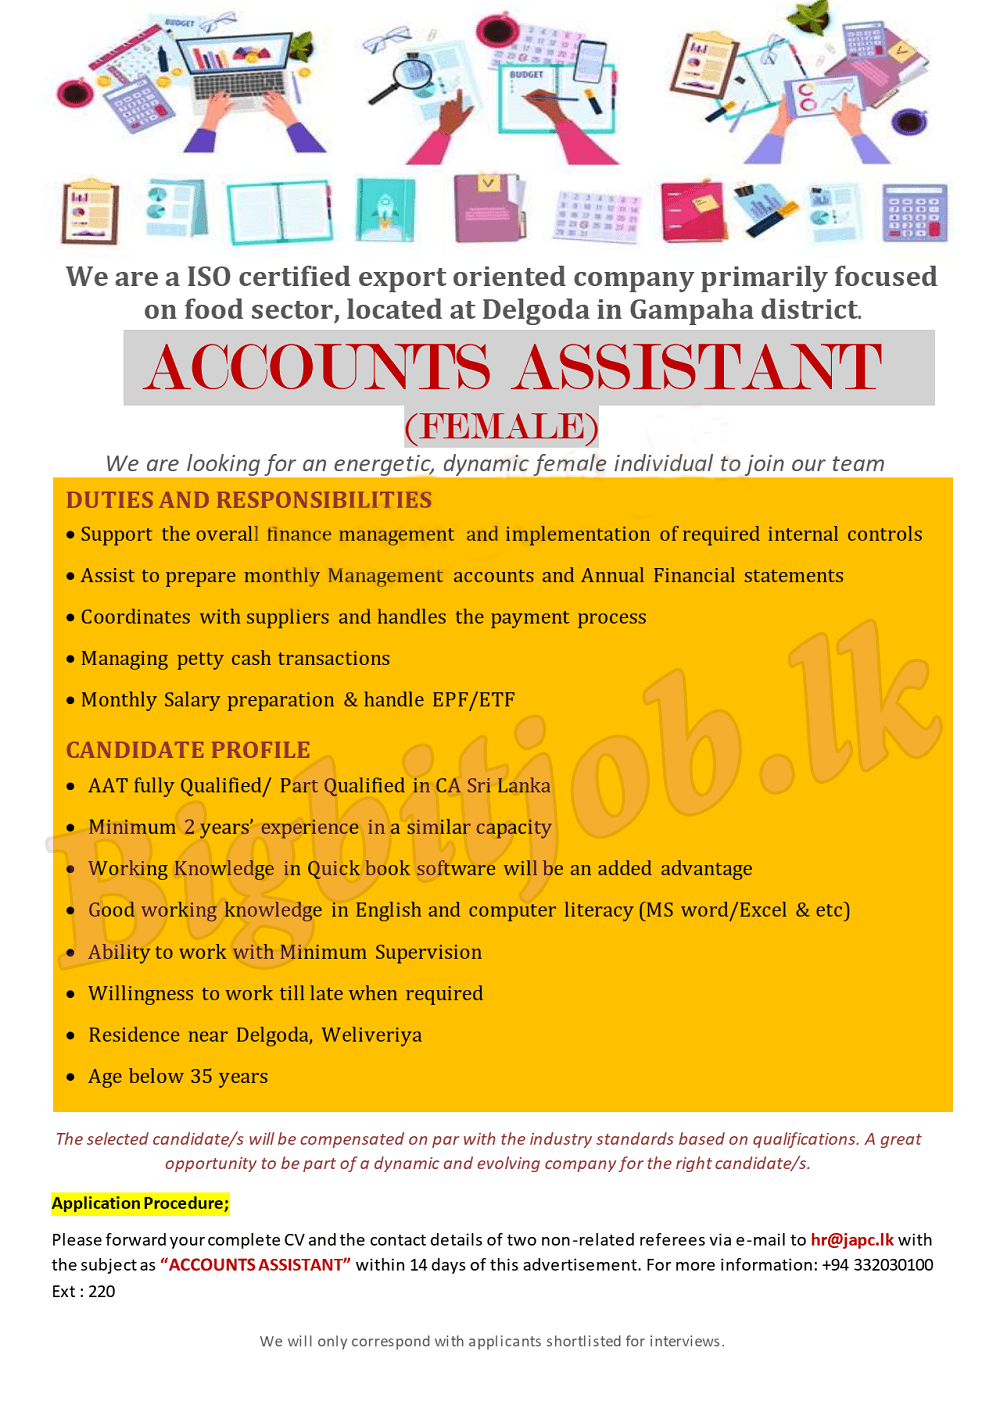 Accounts Assistant Job Vacancy at Joint Agri Products Ceylon (Pvt) Ltd 2023, JOINT AGRI PRODUCTS CEYLON (PVT) LTD VACANCY 2023